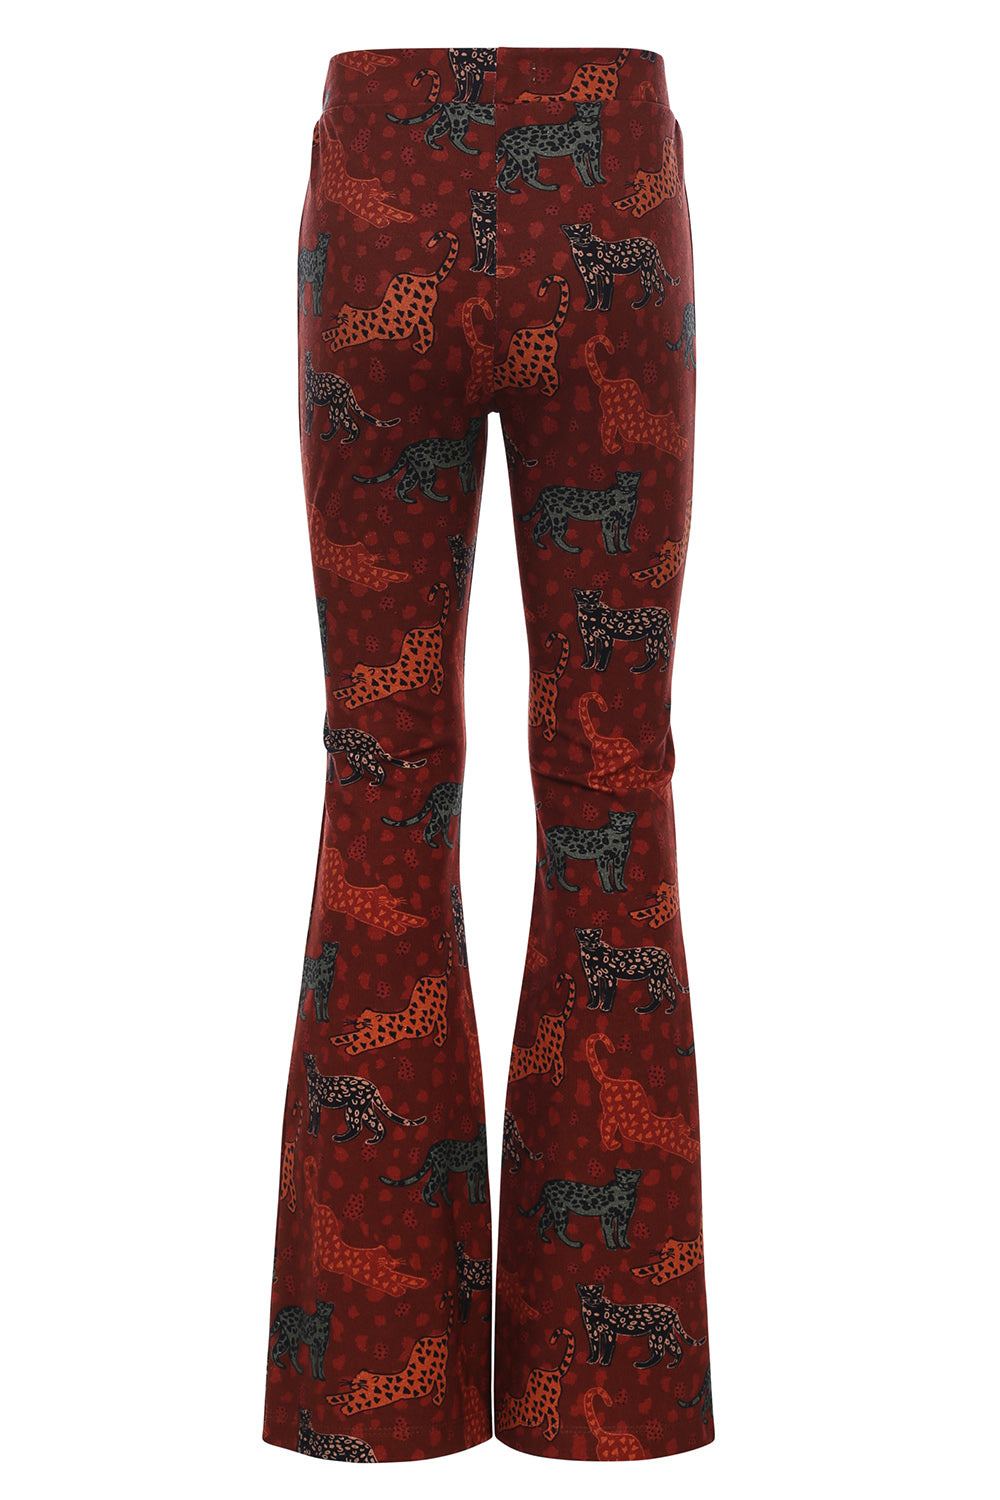 Meisjes Jungle Printed Flare Pants van LOOXS Little in de kleur Jungle Cats AO in maat 128.